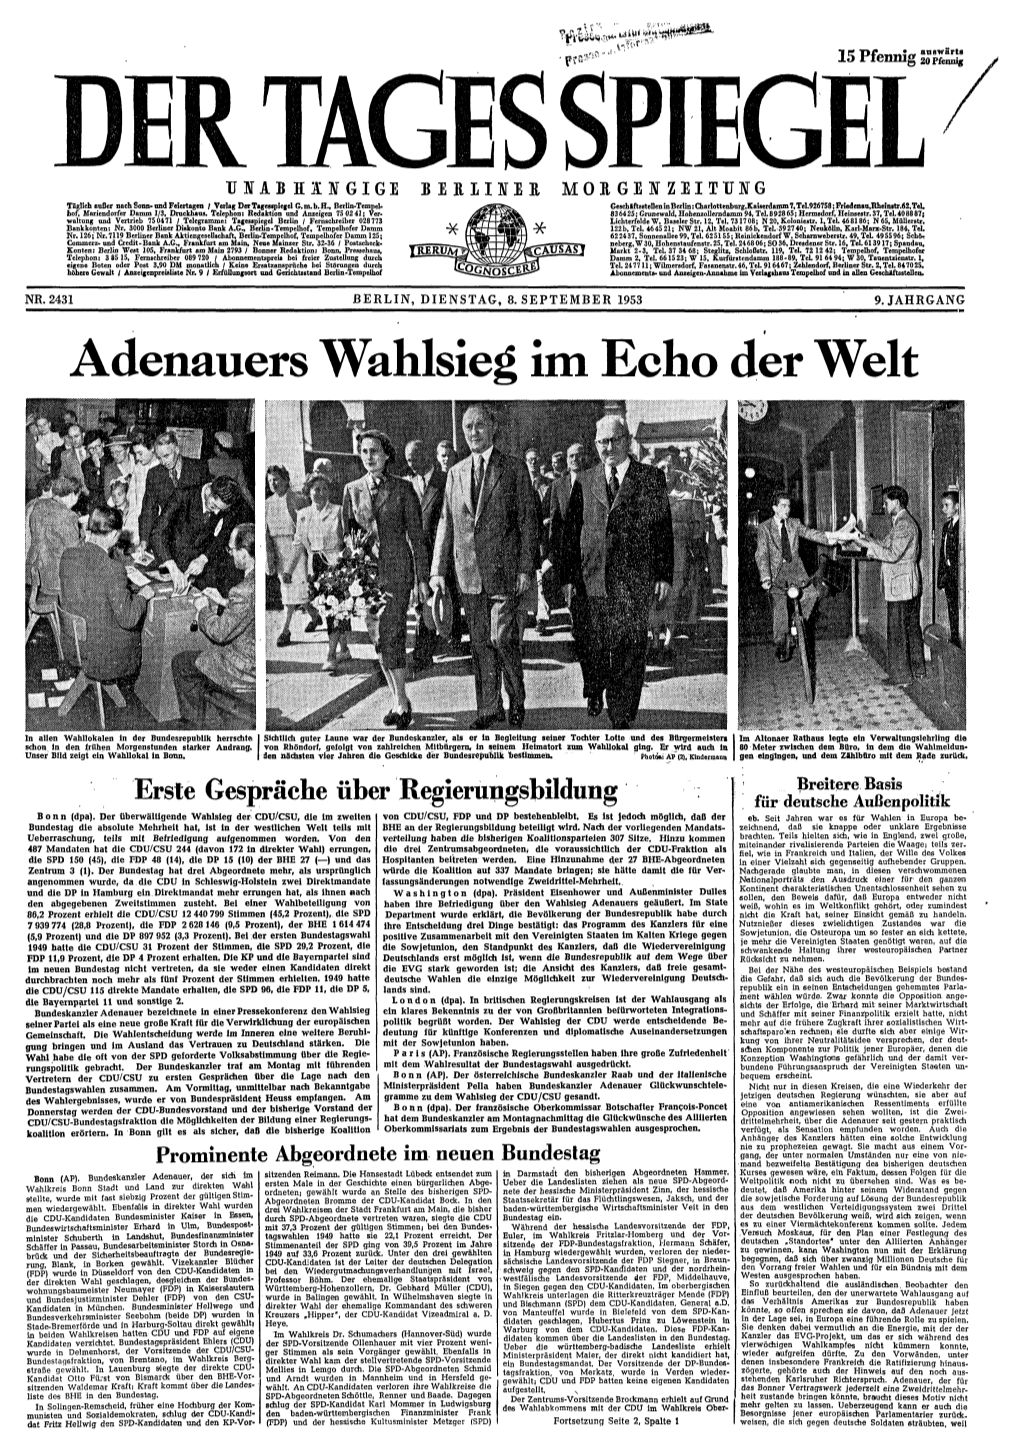 Adenauers Wahlsieg Im Echo Der Welt